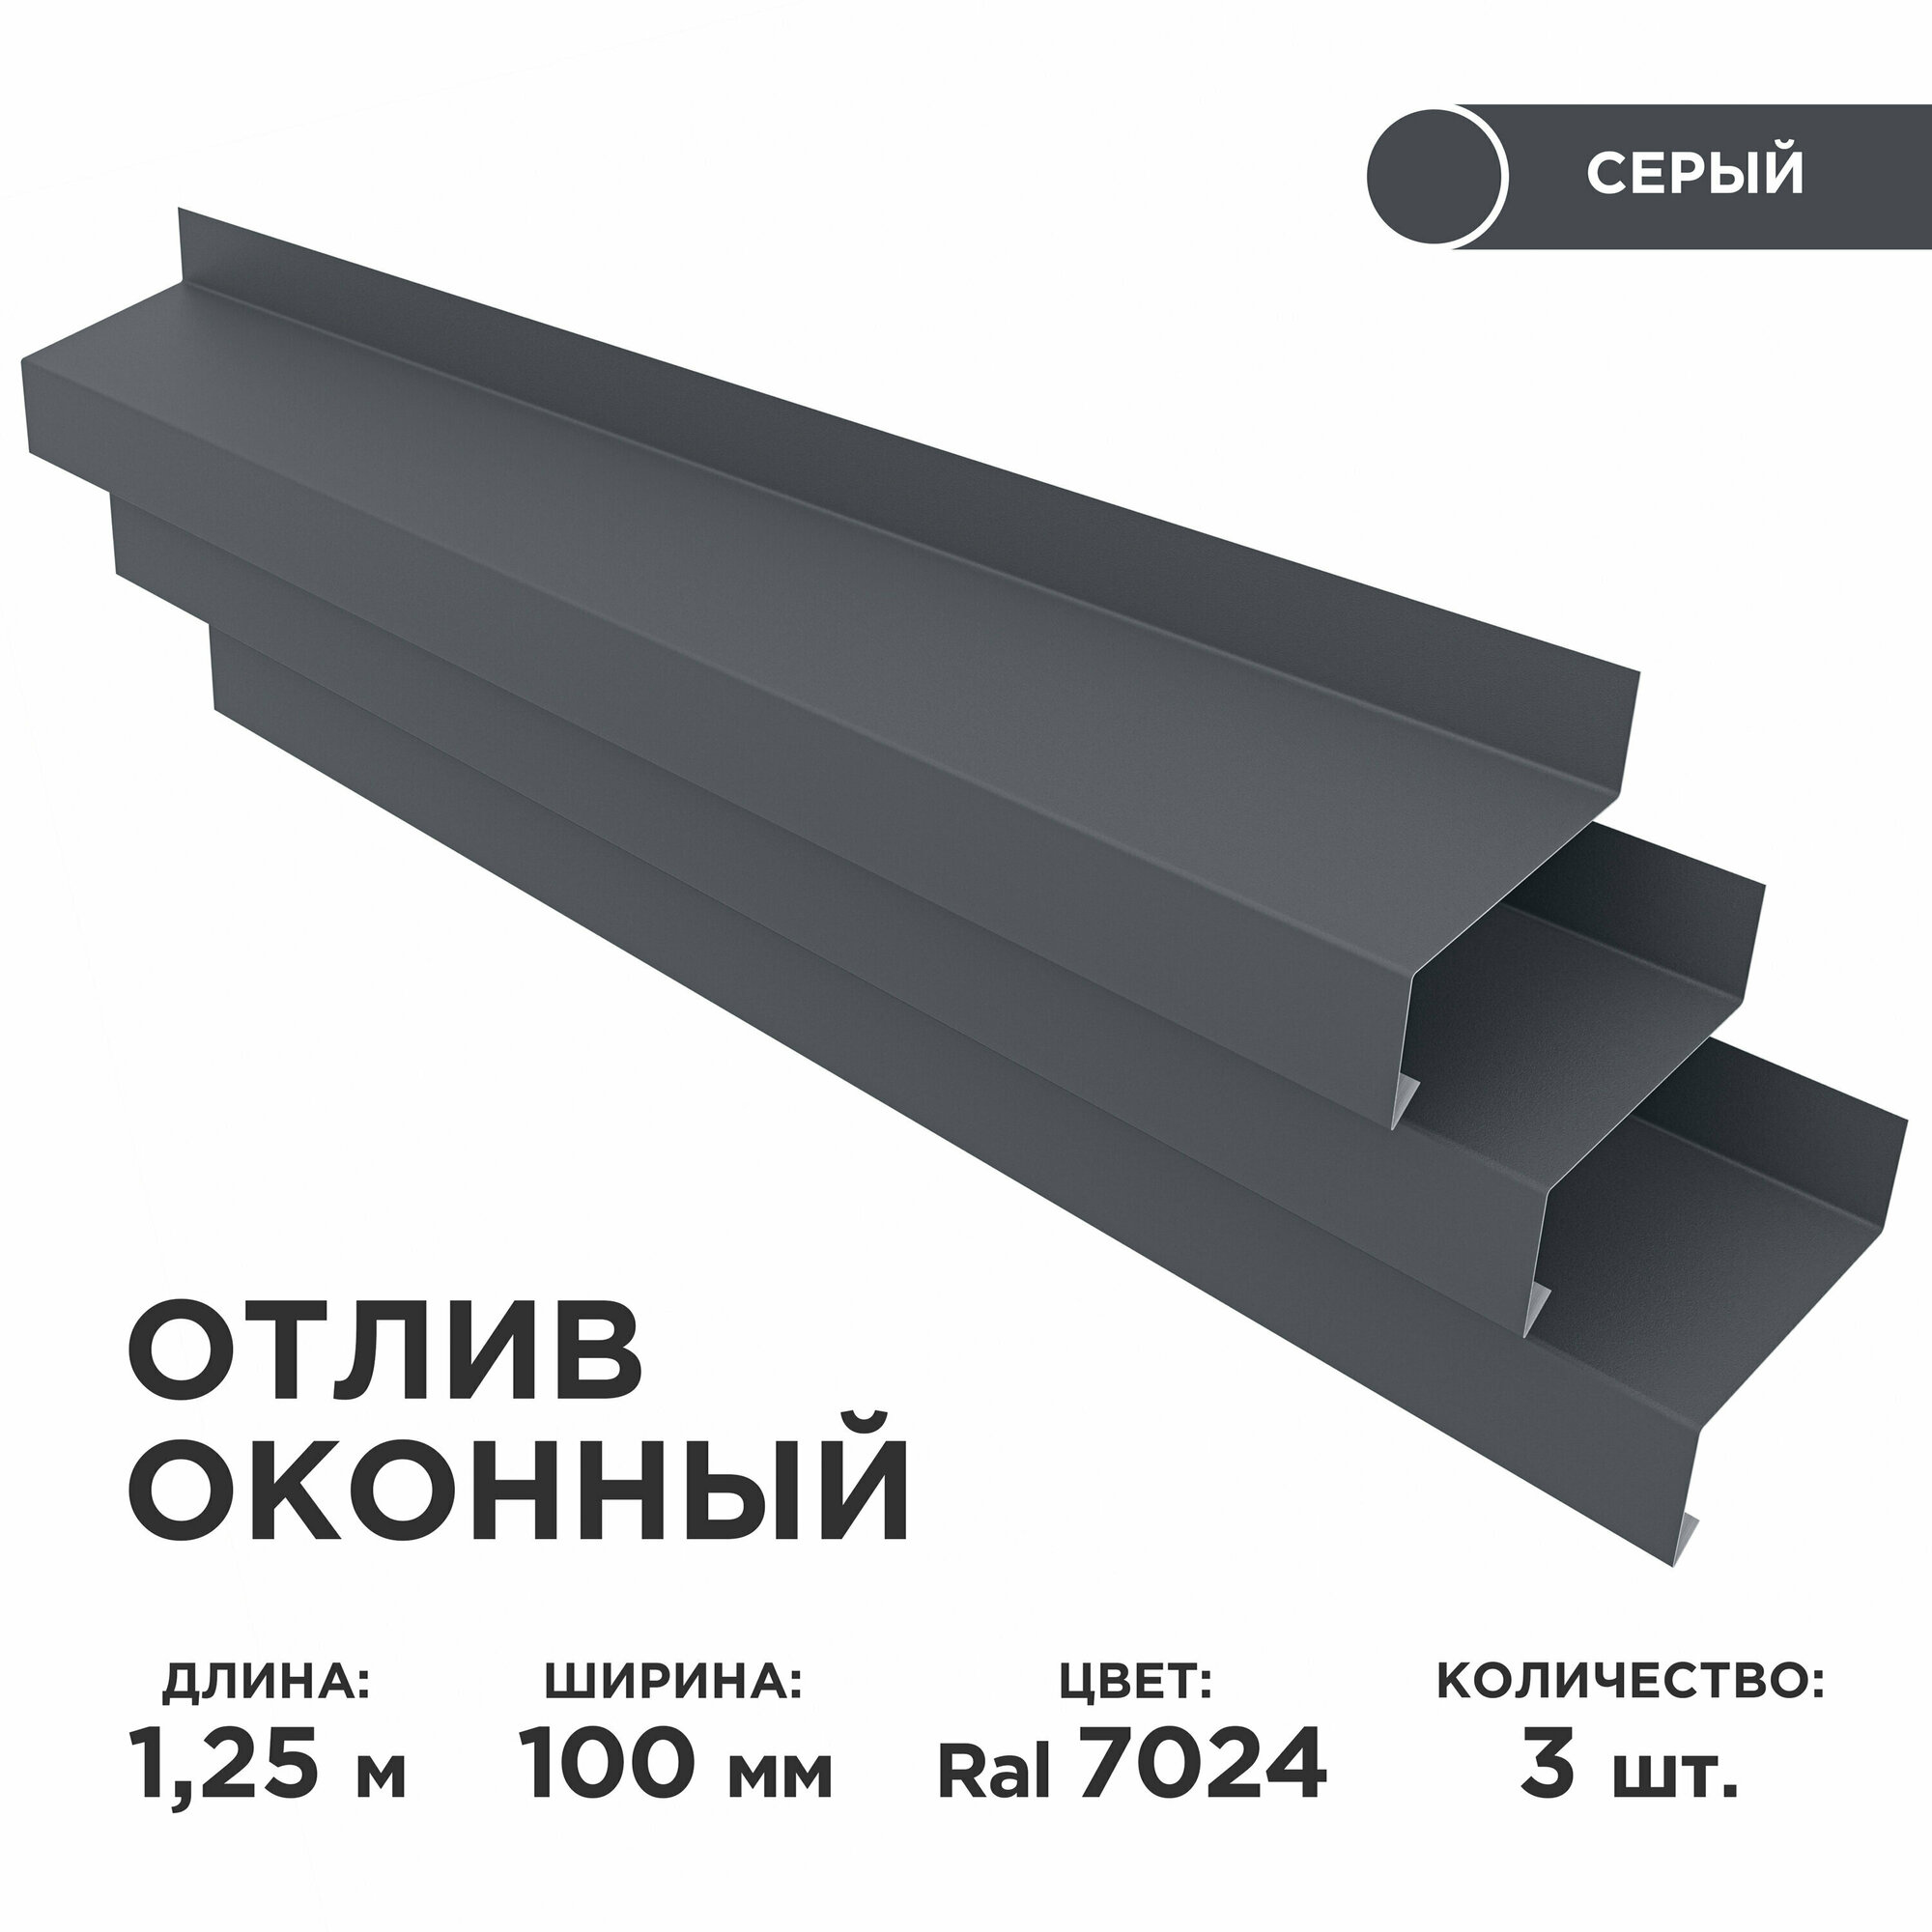 Отлив оконный ширина полки 100мм/ отлив для окна / цвет серый(RAL 7024) Длина 1,25м, 3 штуки в комплекте